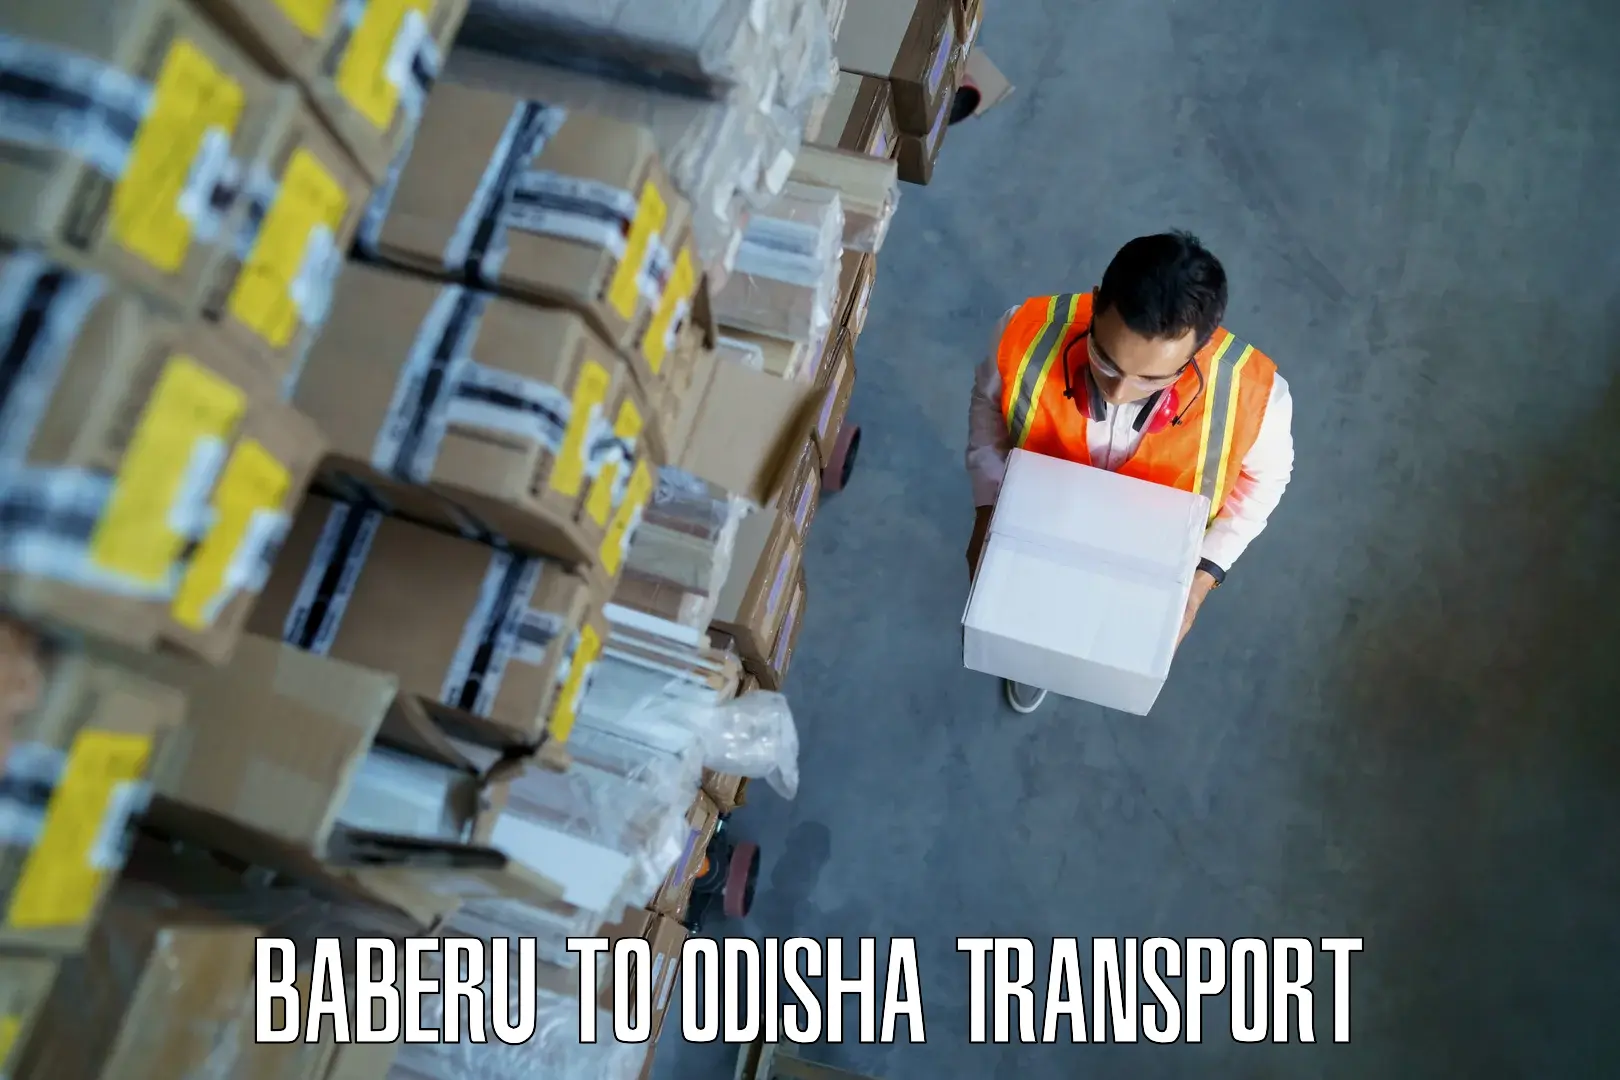 Transportation services Baberu to Melchhamunda